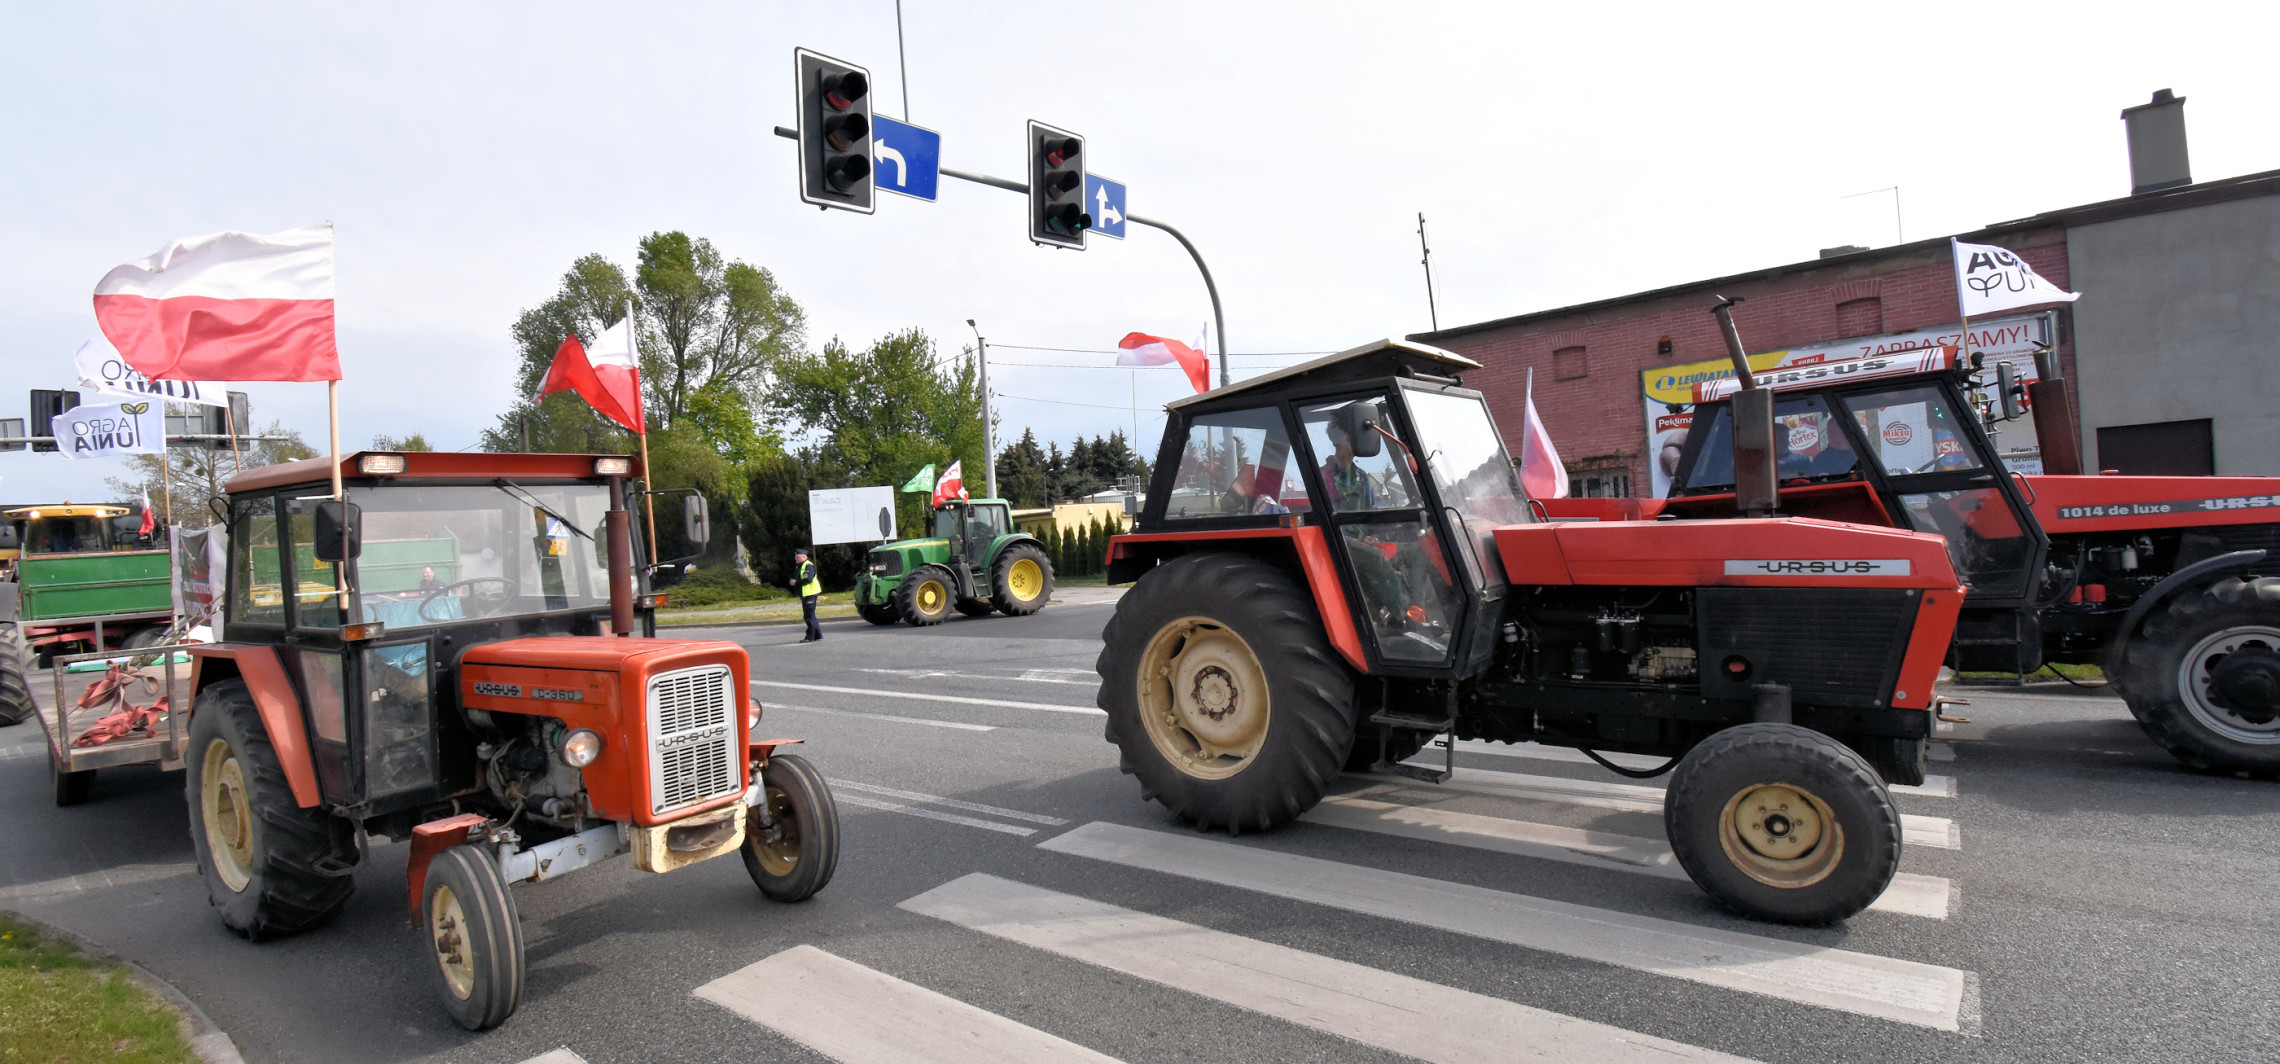 Inowrocław - Ciągnikami zablokowali drogi w regionie